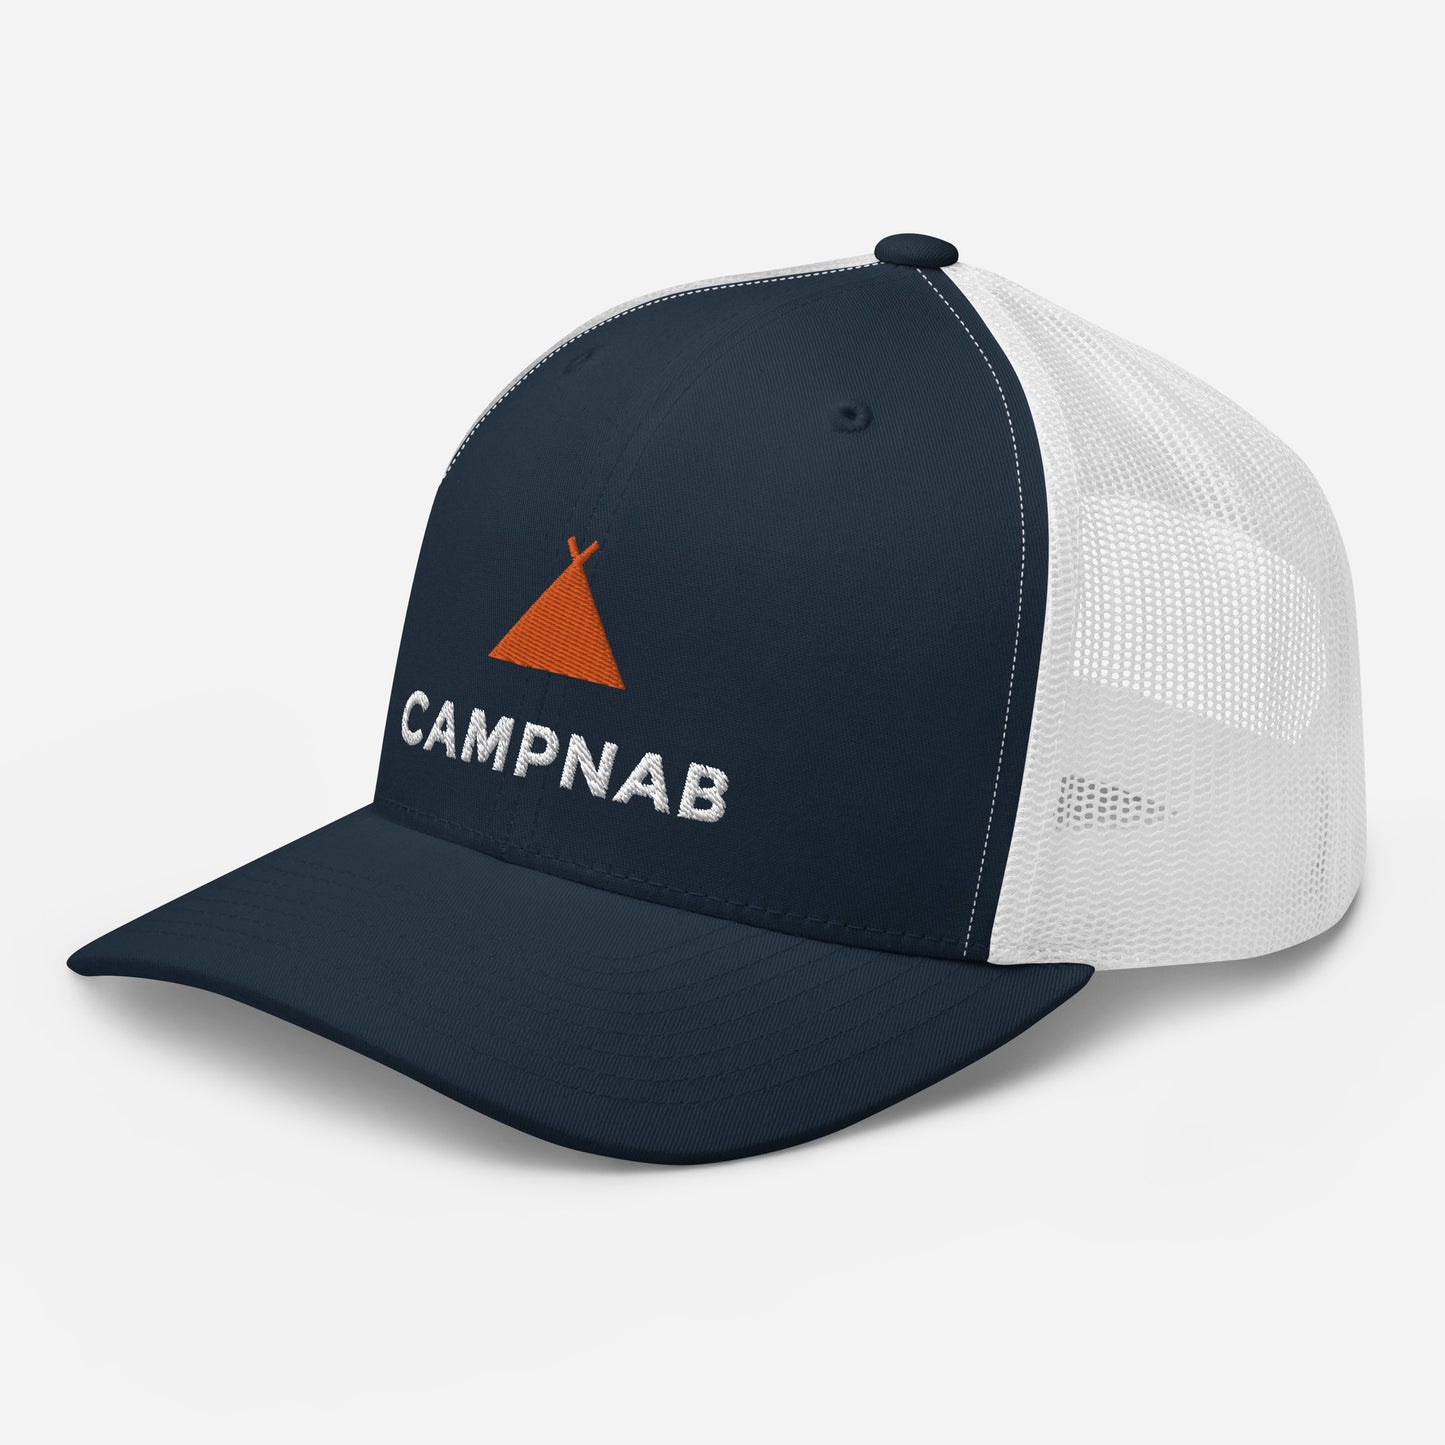 The Original Campnab Trucker Cap